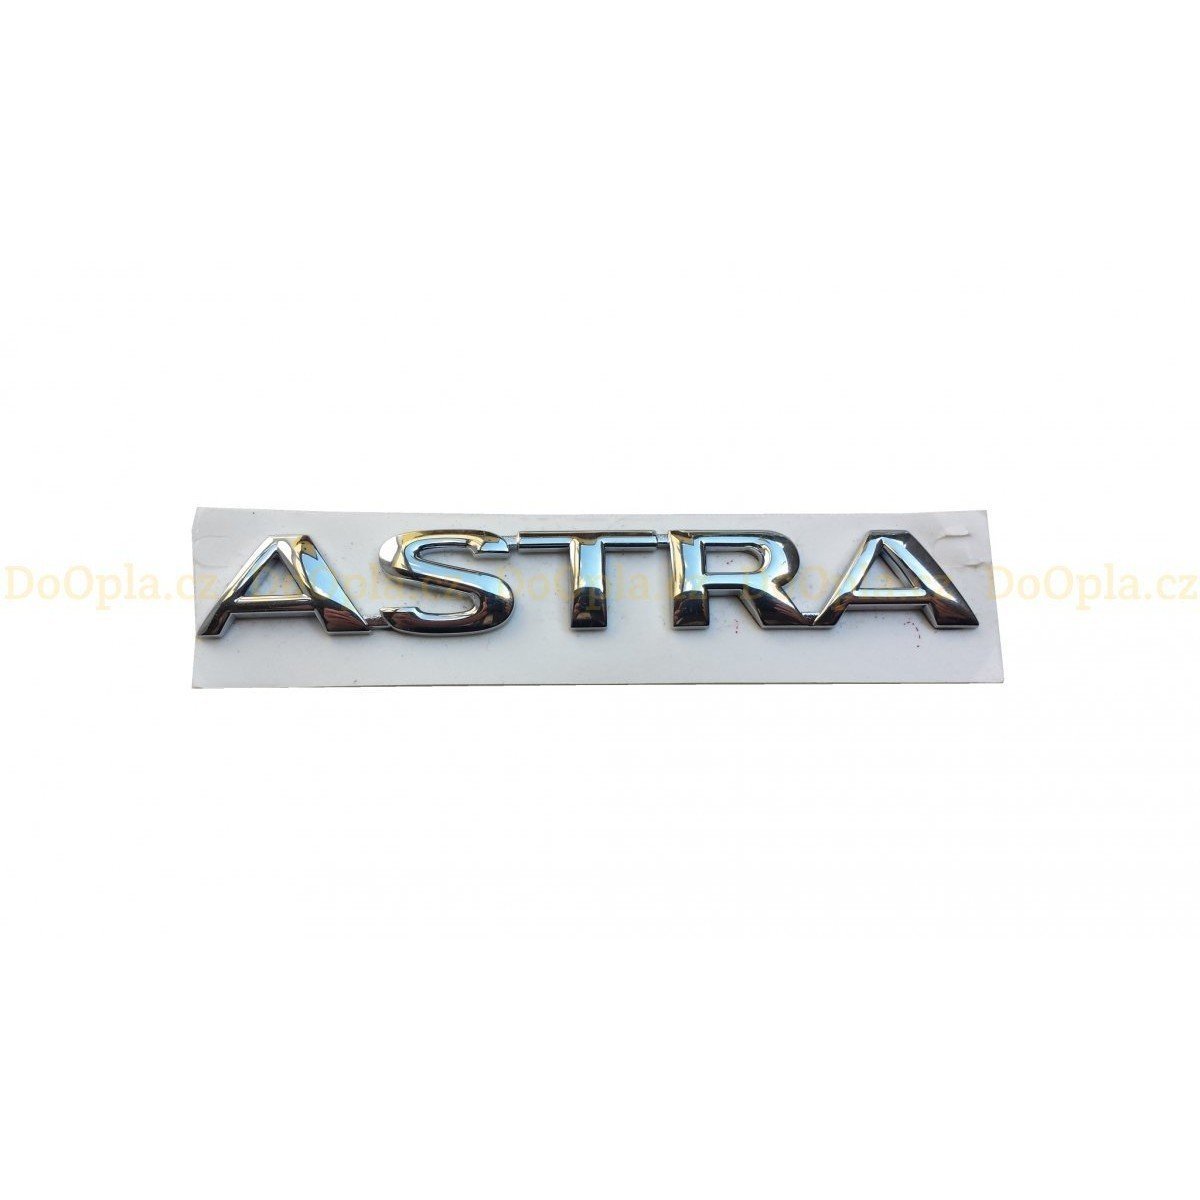 Opel Astra G Bagaj Kapağı Astra Yazısı